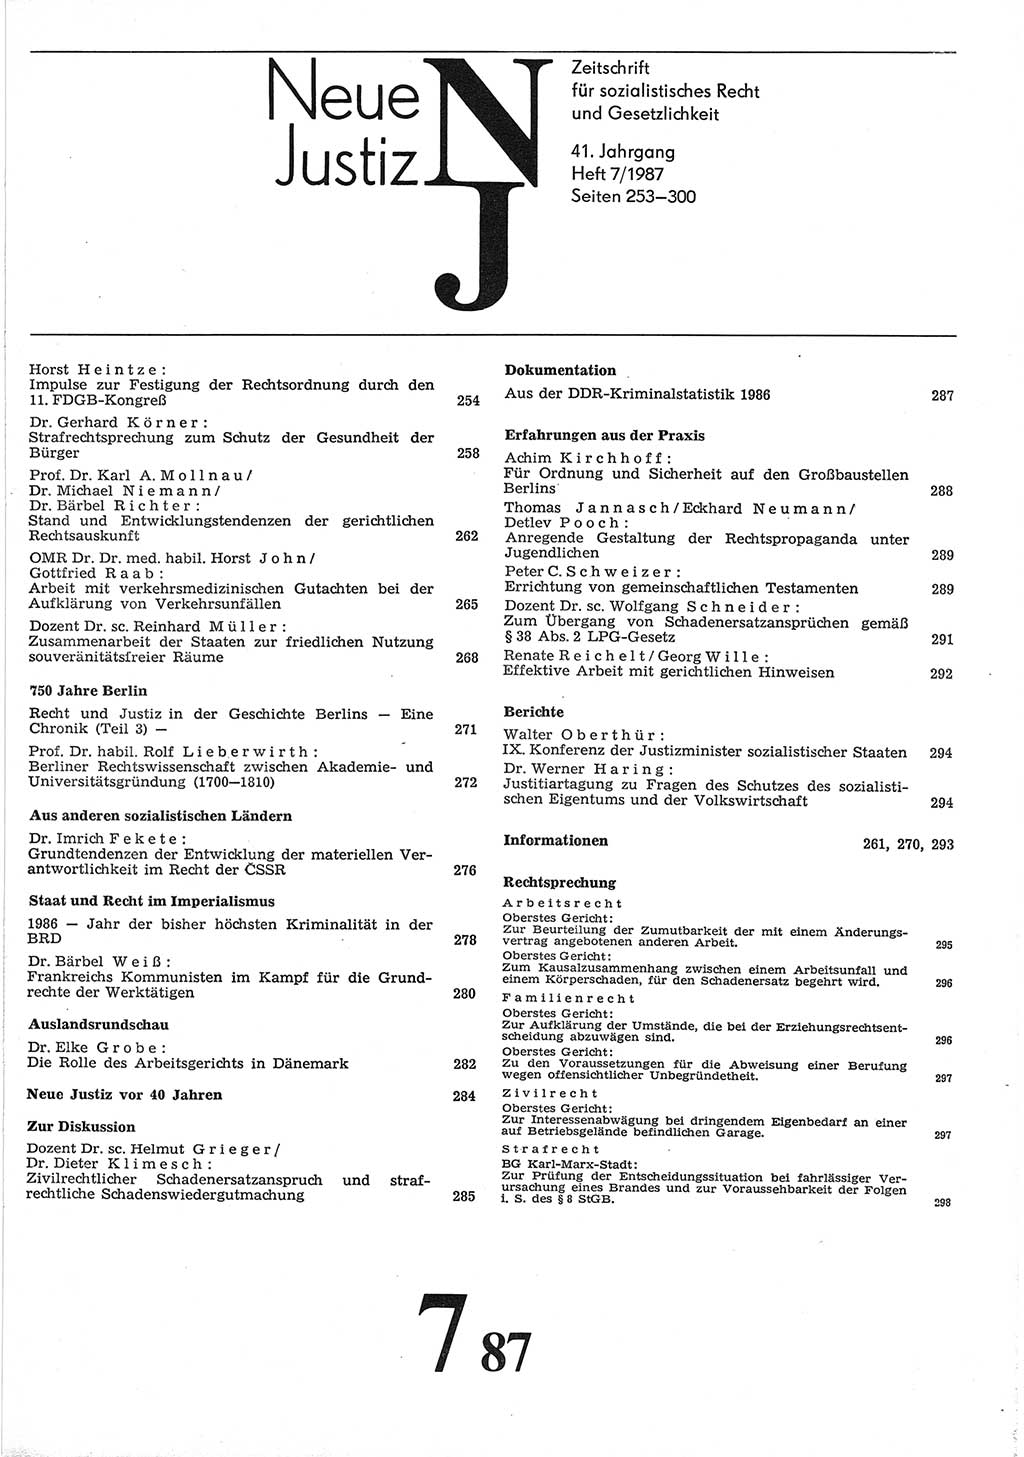 Neue Justiz (NJ), Zeitschrift für sozialistisches Recht und Gesetzlichkeit [Deutsche Demokratische Republik (DDR)], 41. Jahrgang 1987, Seite 253 (NJ DDR 1987, S. 253)